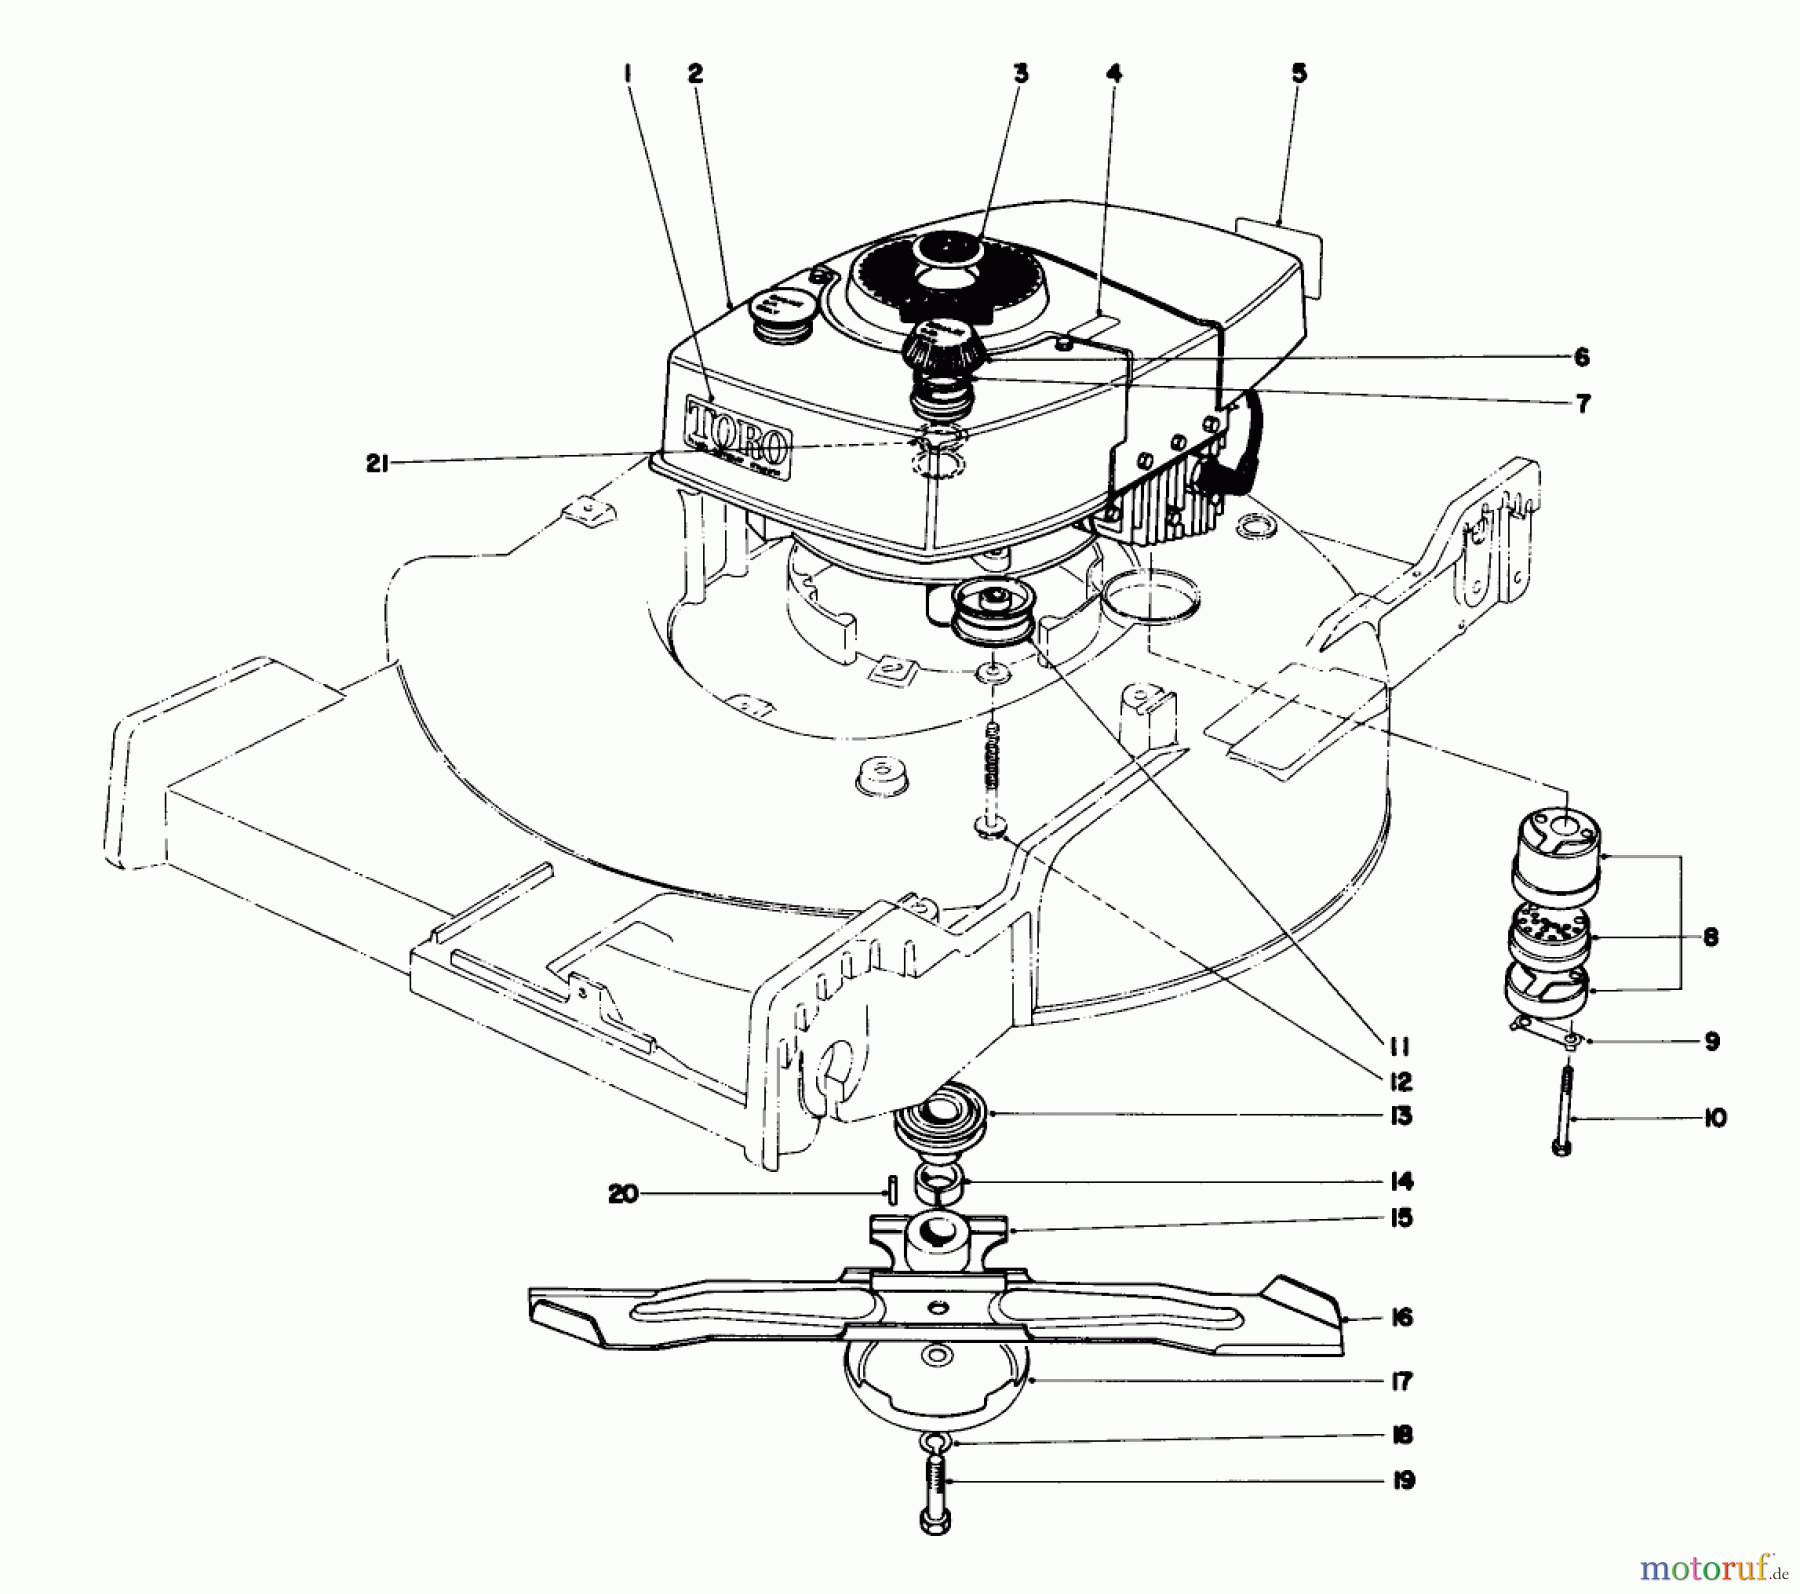  Toro Neu Mowers, Walk-Behind Seite 1 20550 - Toro Lawnmower, 1975 (5000001-5999999) ENGINE ASSEMBLY